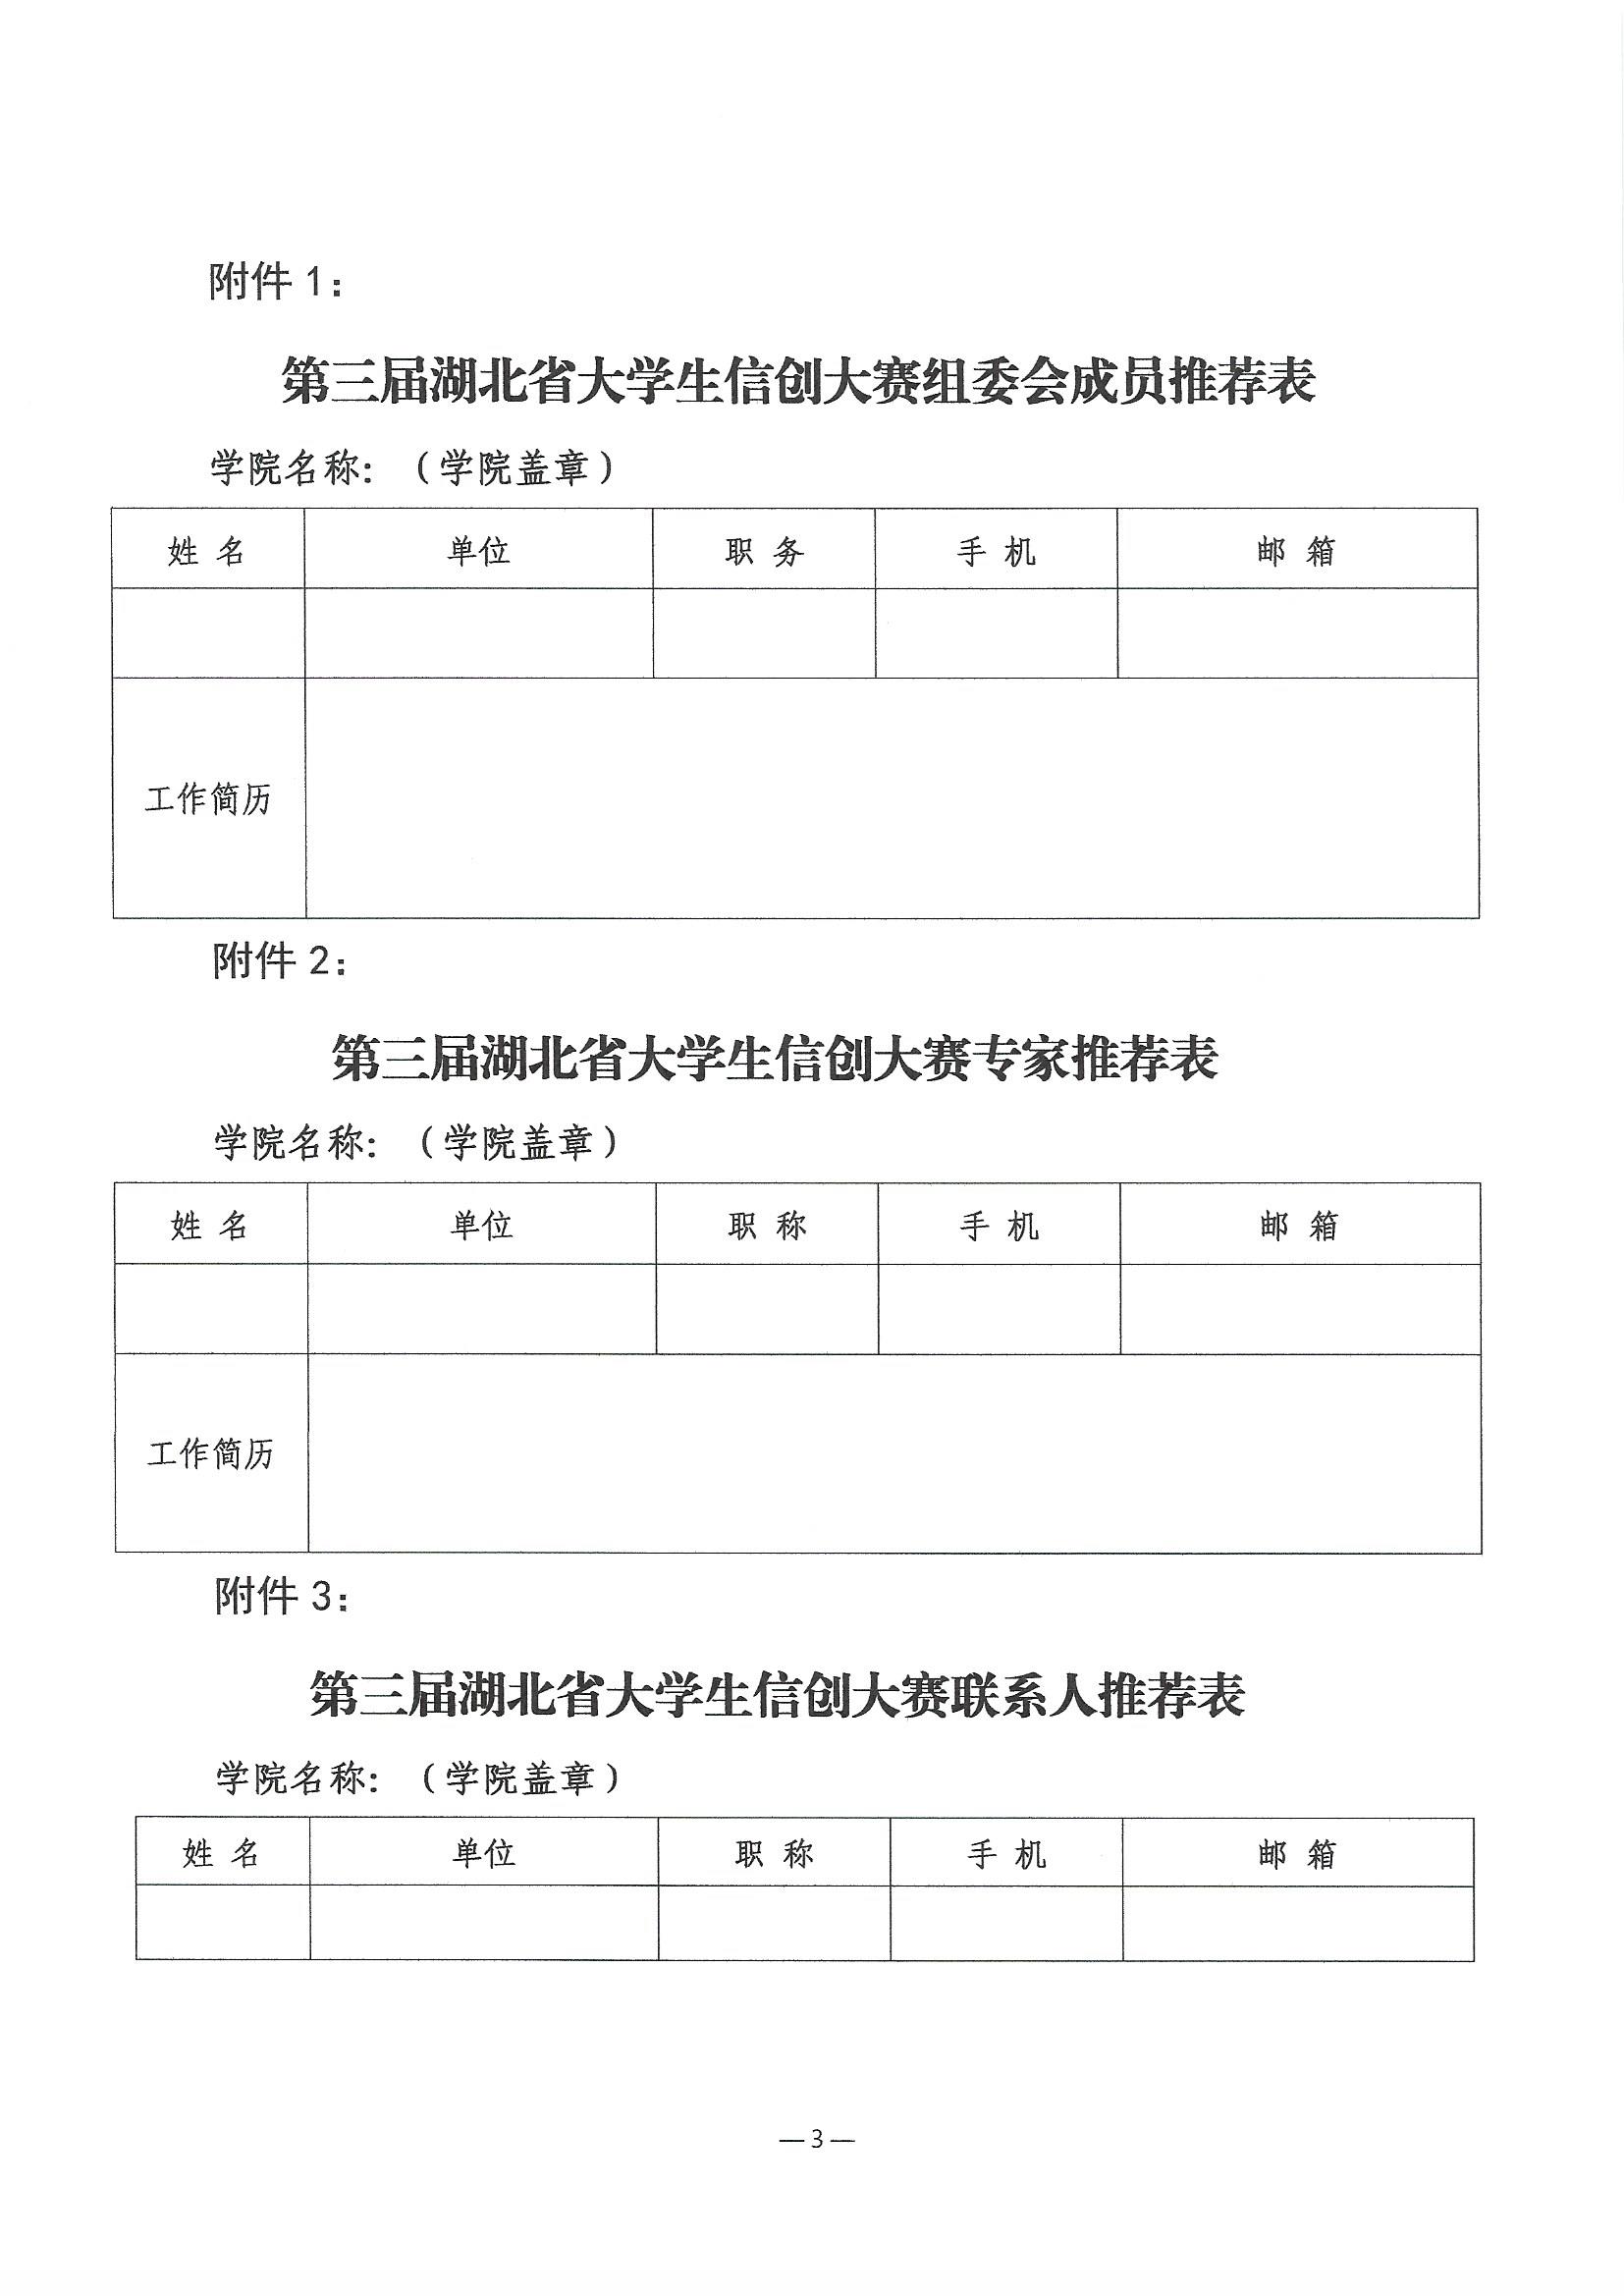 关于推荐第三届湖北省大学生信创大赛组委会和专家委员会成员的通知(1)_页面_3.jpg